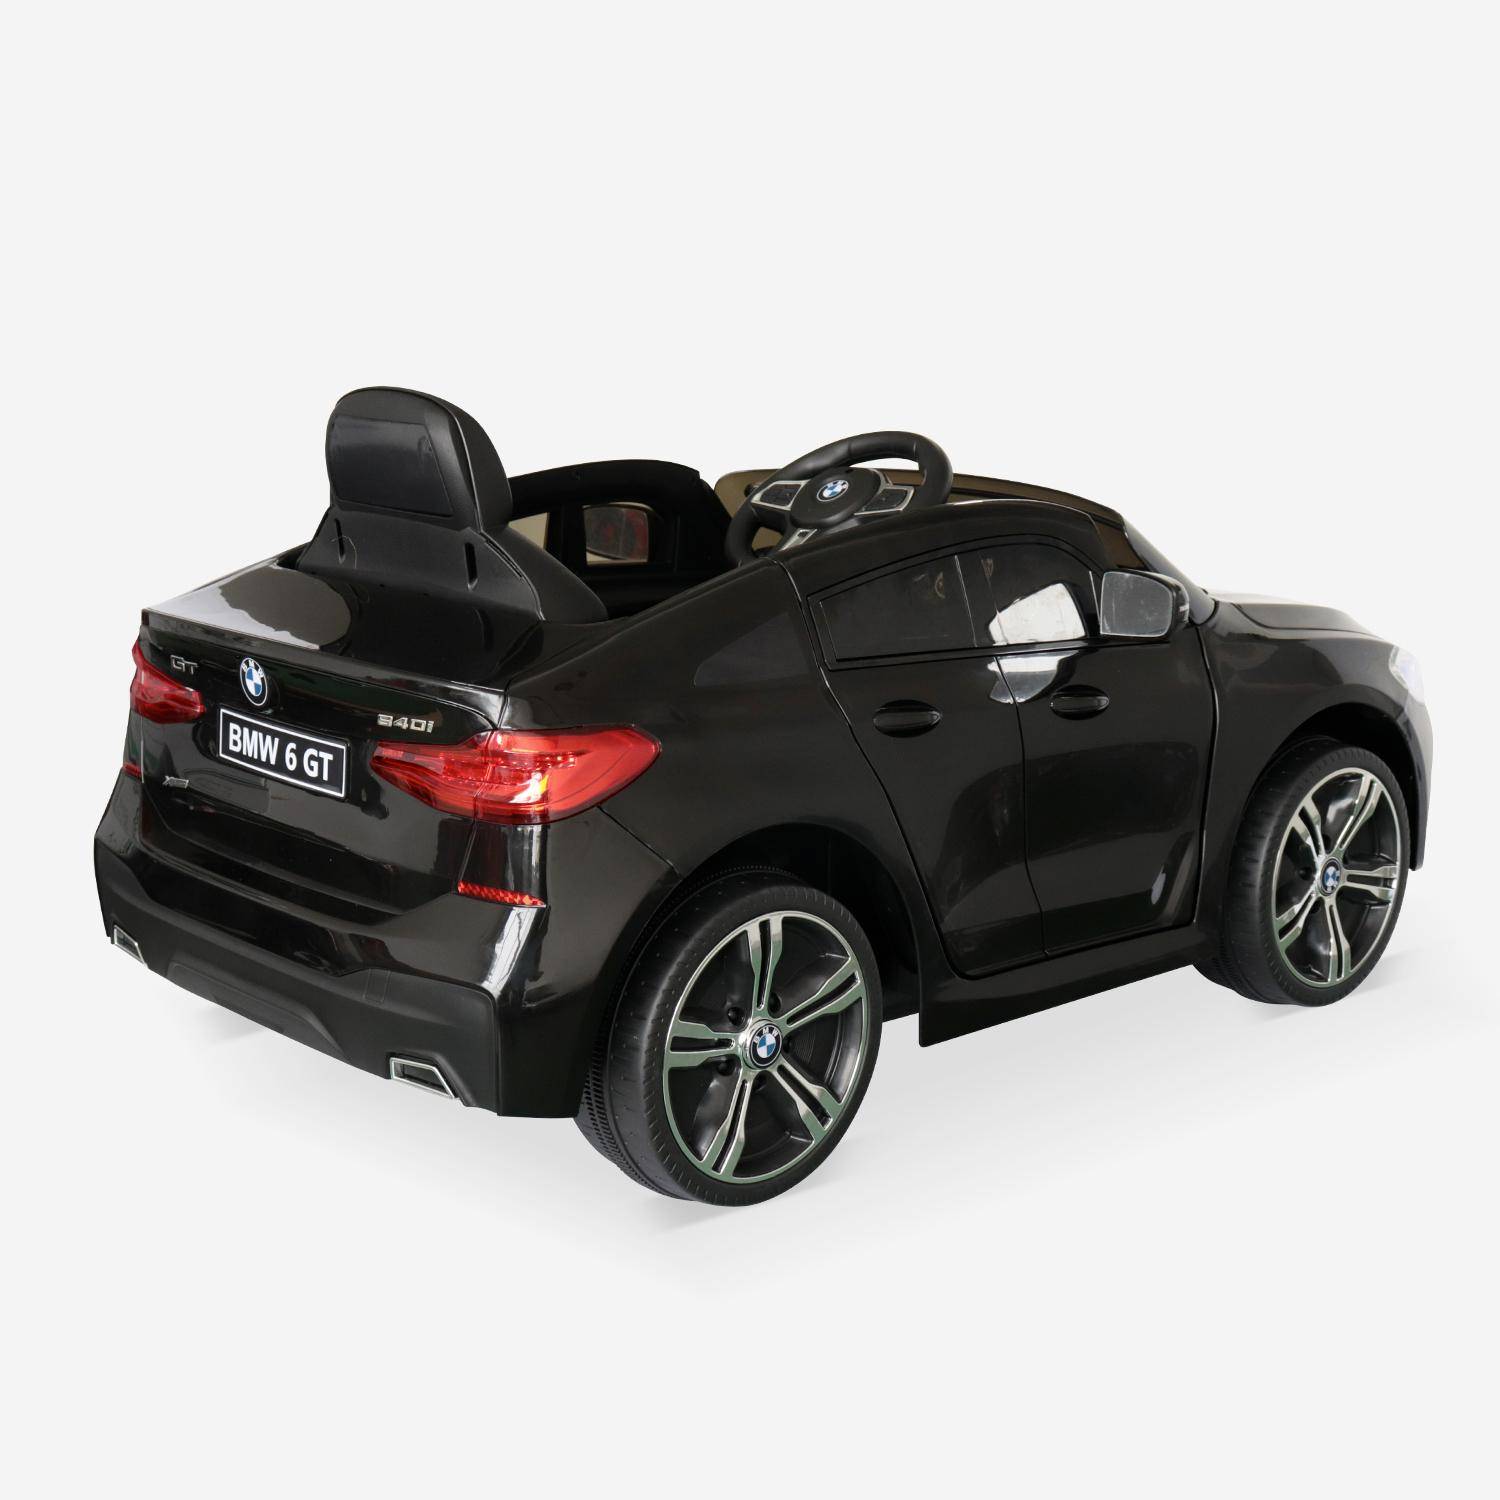 BMW GT6 Gran Turismo zwart, elektrische auto 12V, 1 plaats, cabriolet voor kinderen met autoradio en afstandsbediening Photo3